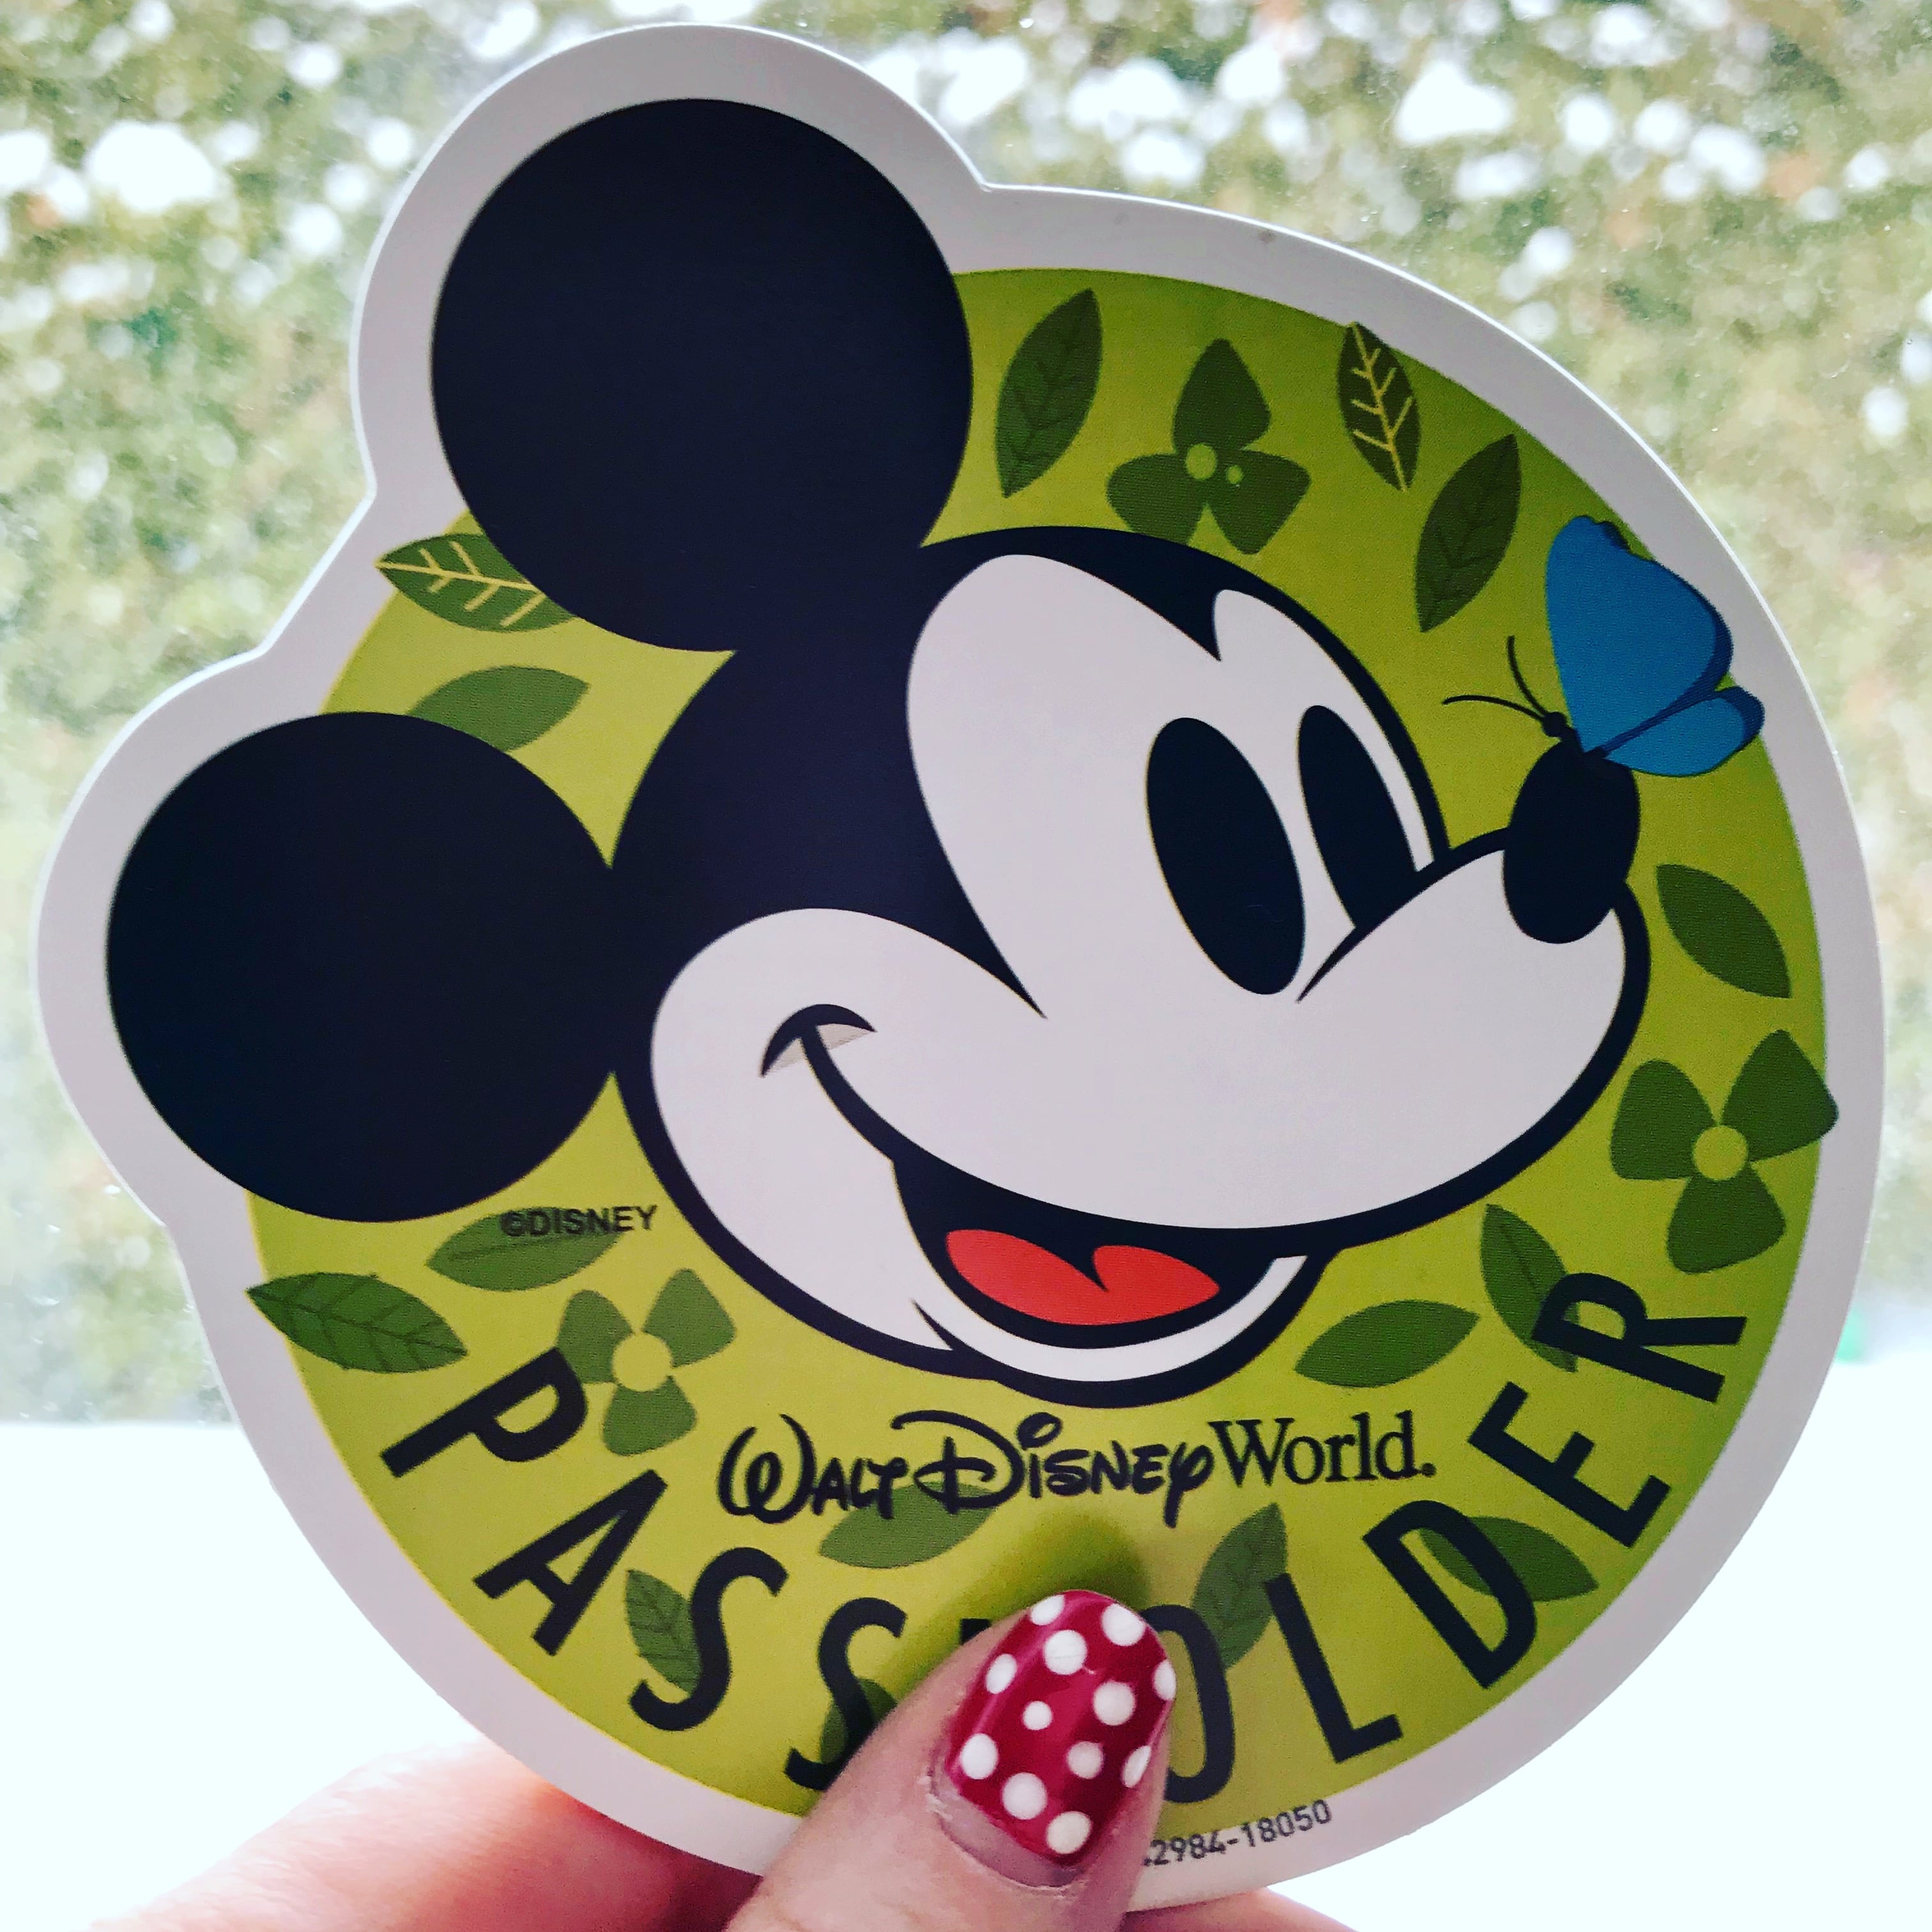 Disney Passholder Magnet from 2018 Flower & Garden Festival